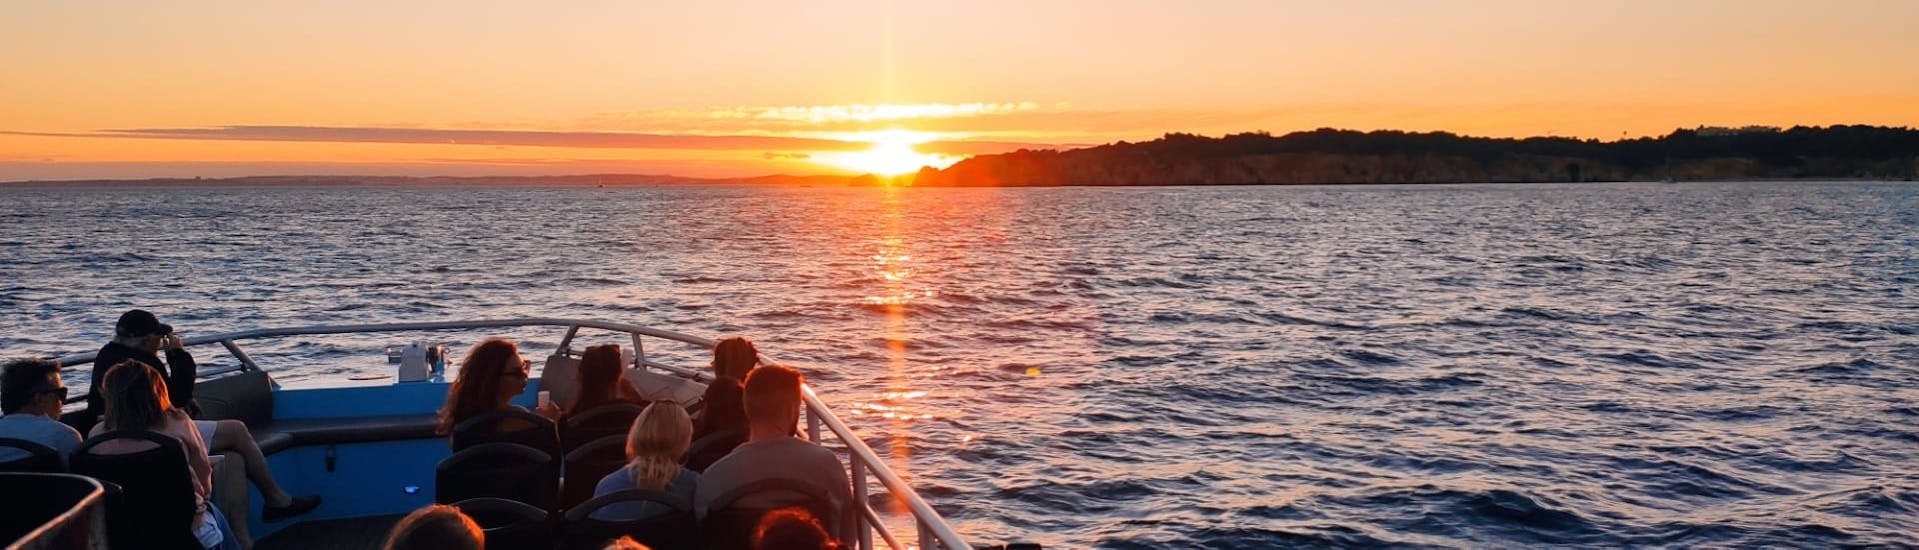 Gente en el barco de 5emotions Portimão viendo la puesta de sol durante el Sunset Boat Trip with Dolphin Watching.Gente en el barco de 5emotions Portimão viendo la puesta de sol durante el Sunset Boat Trip with Dolphin Watching.